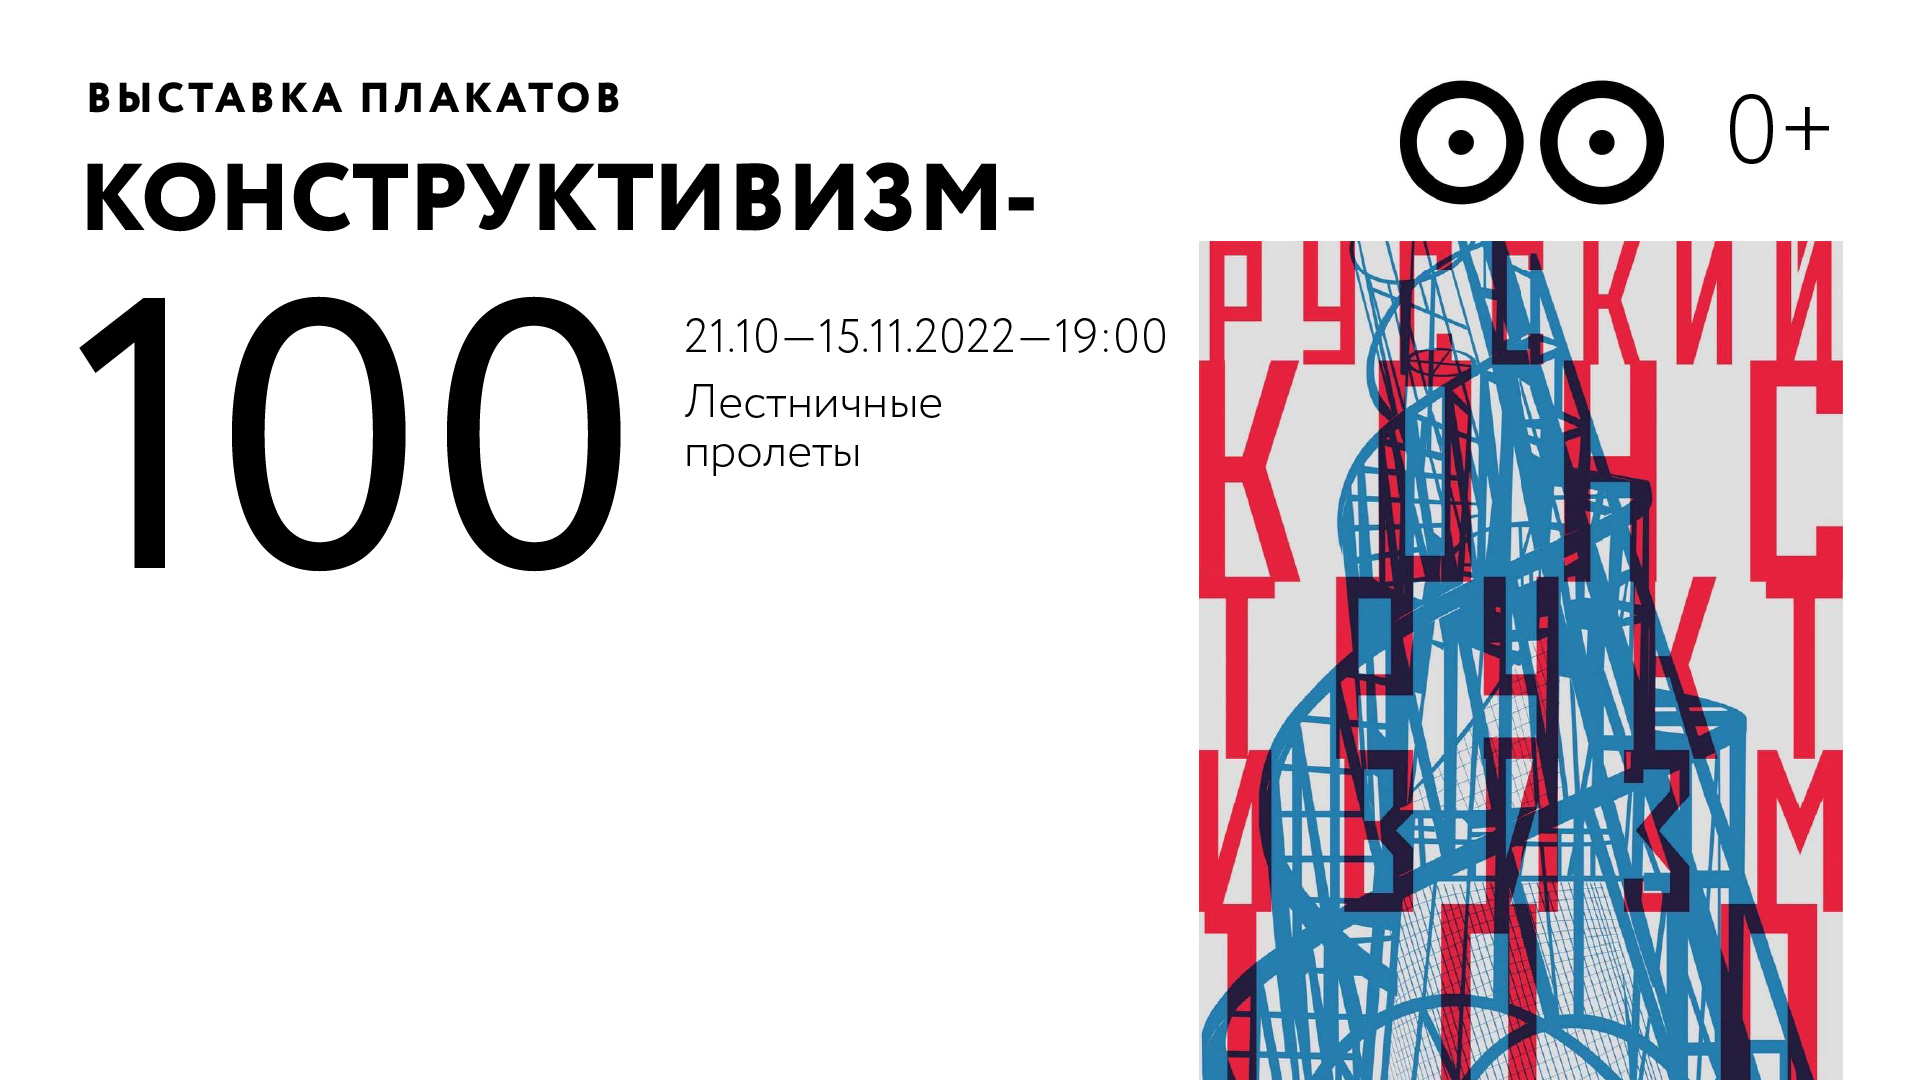 Выставка плакатов «Конструктивизм-100»